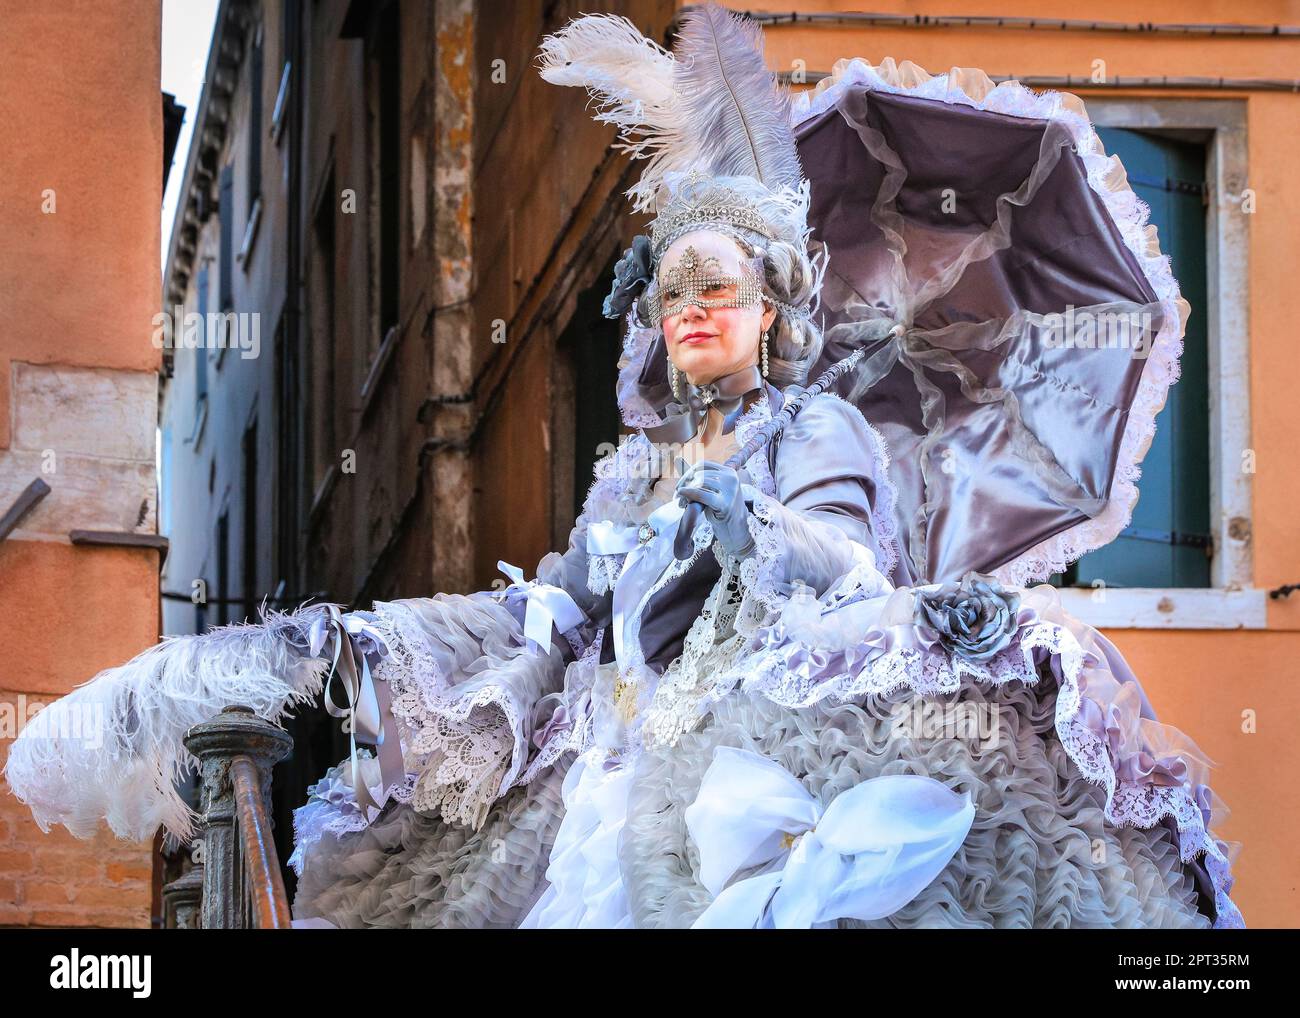 Baroque carnival immagini e fotografie stock ad alta risoluzione - Alamy